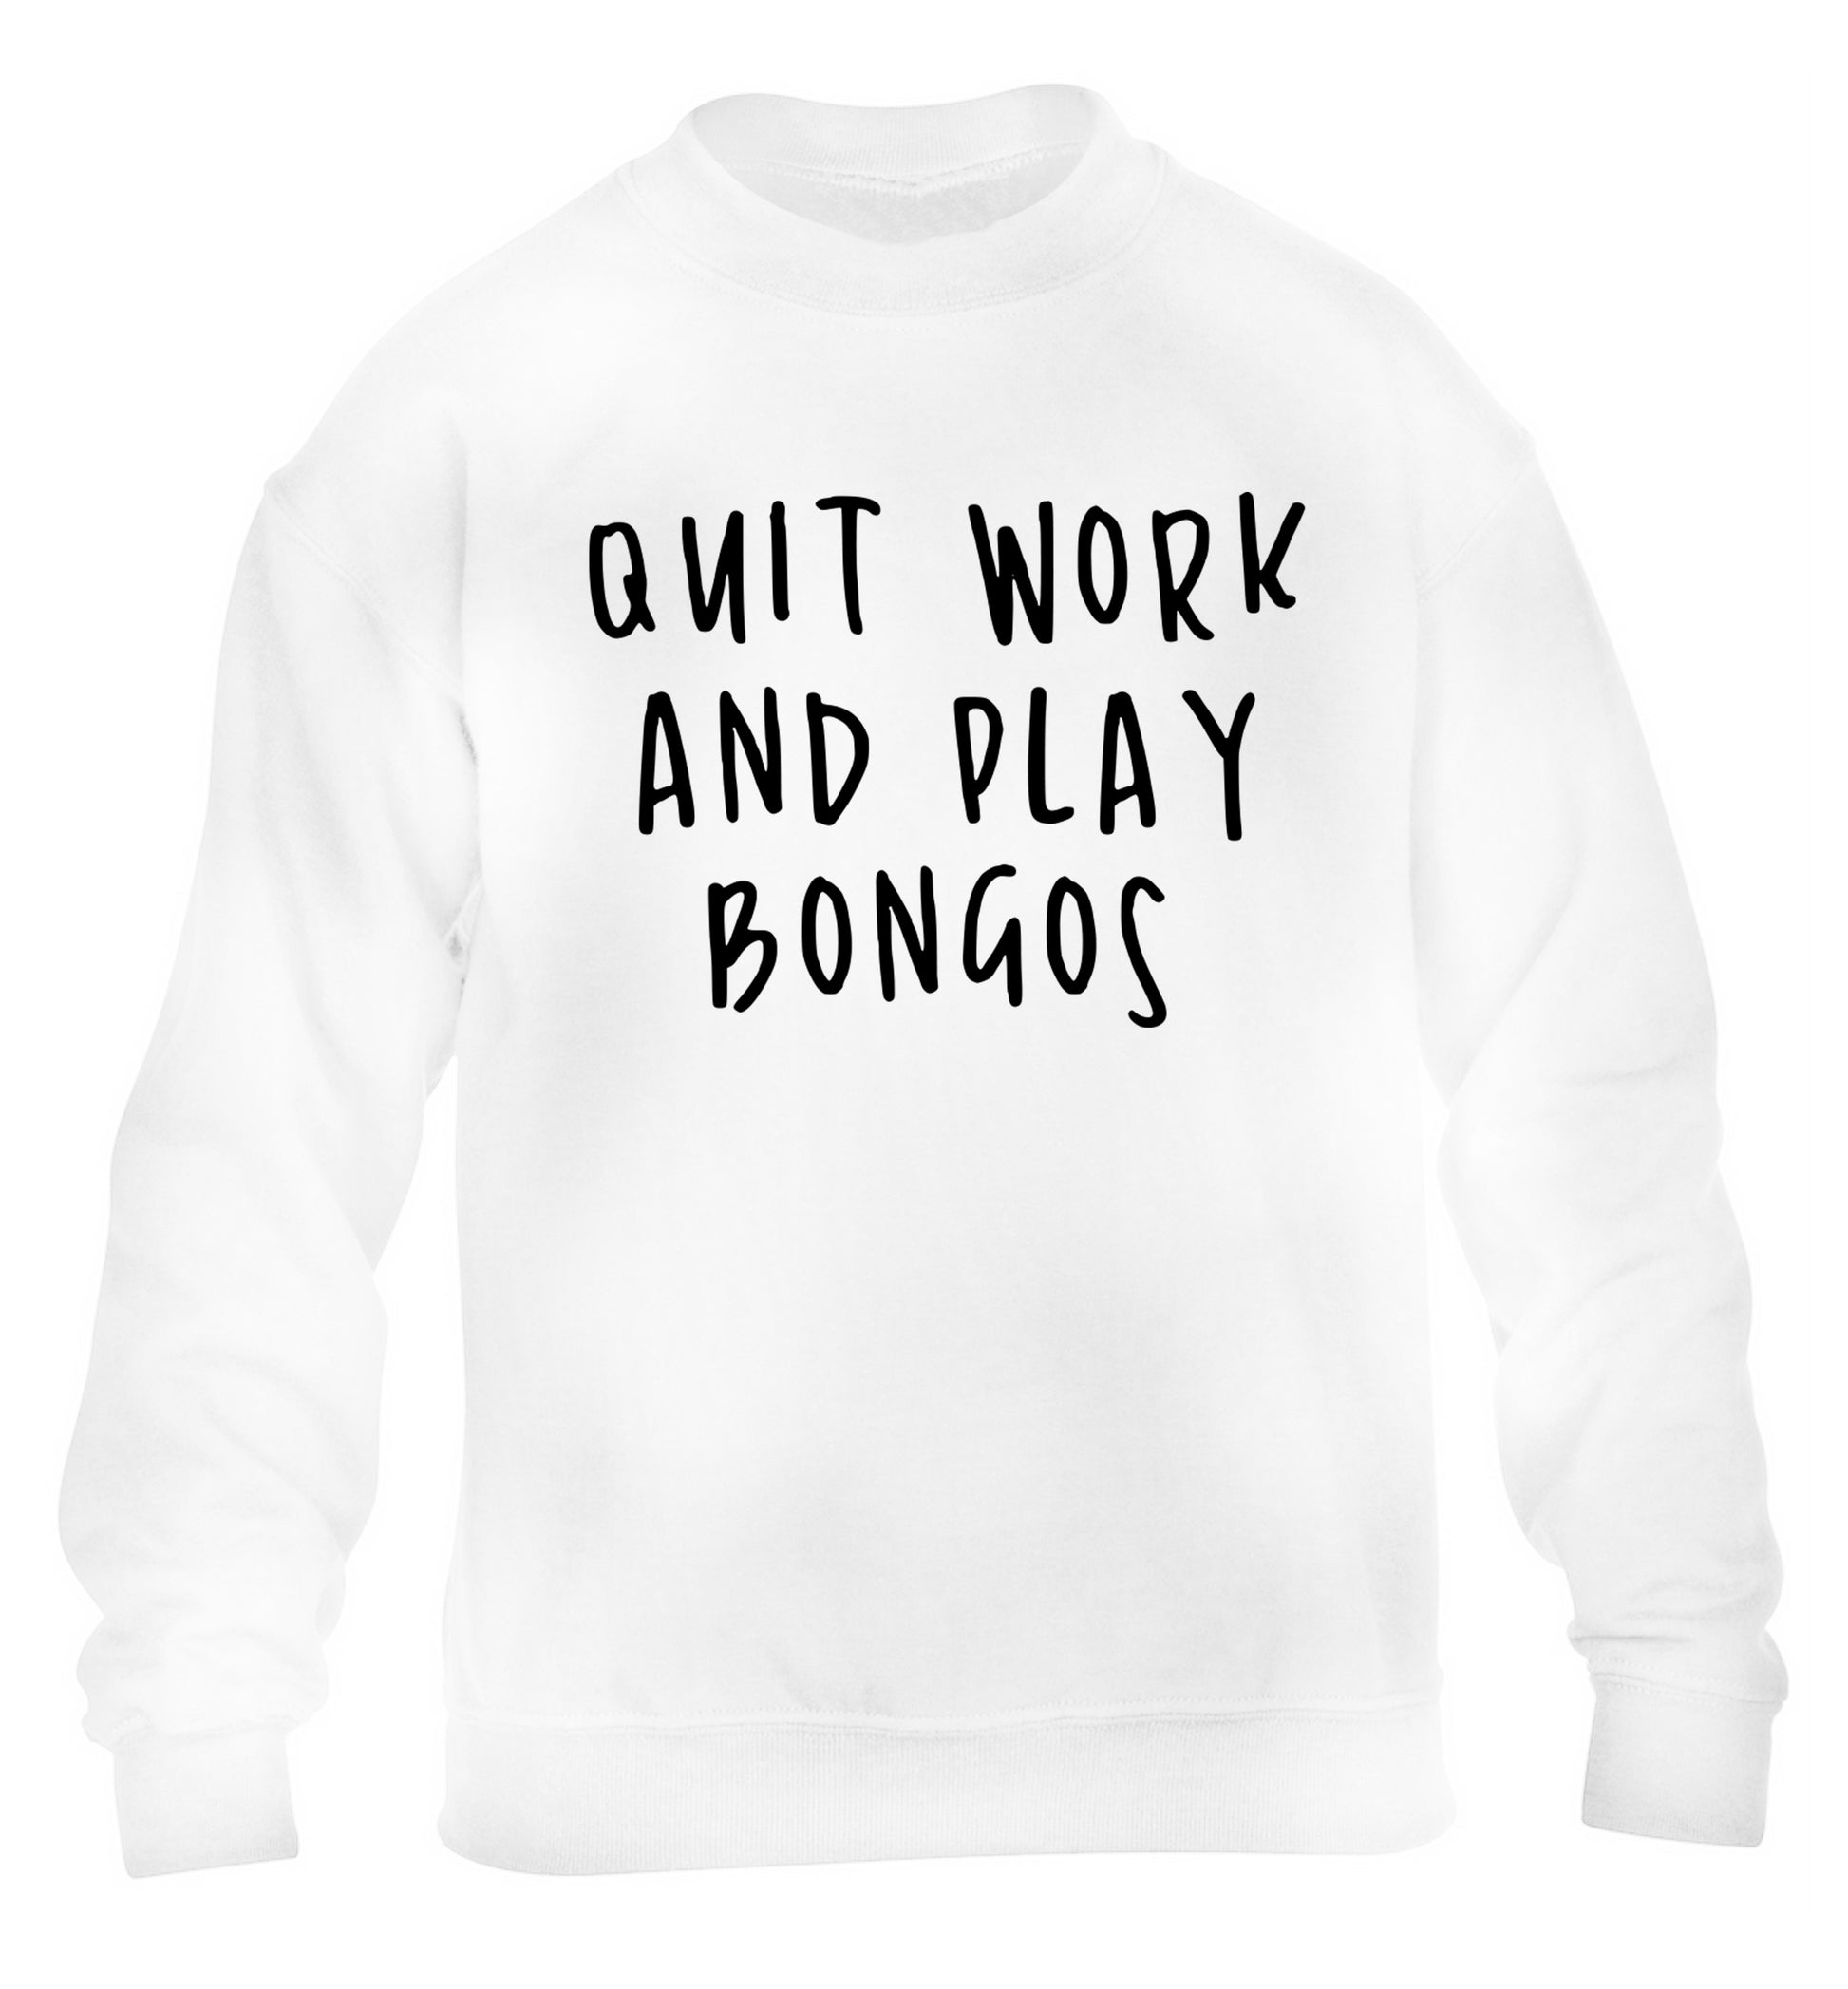 Quit work and play bongos children's white sweater 12-14 Years